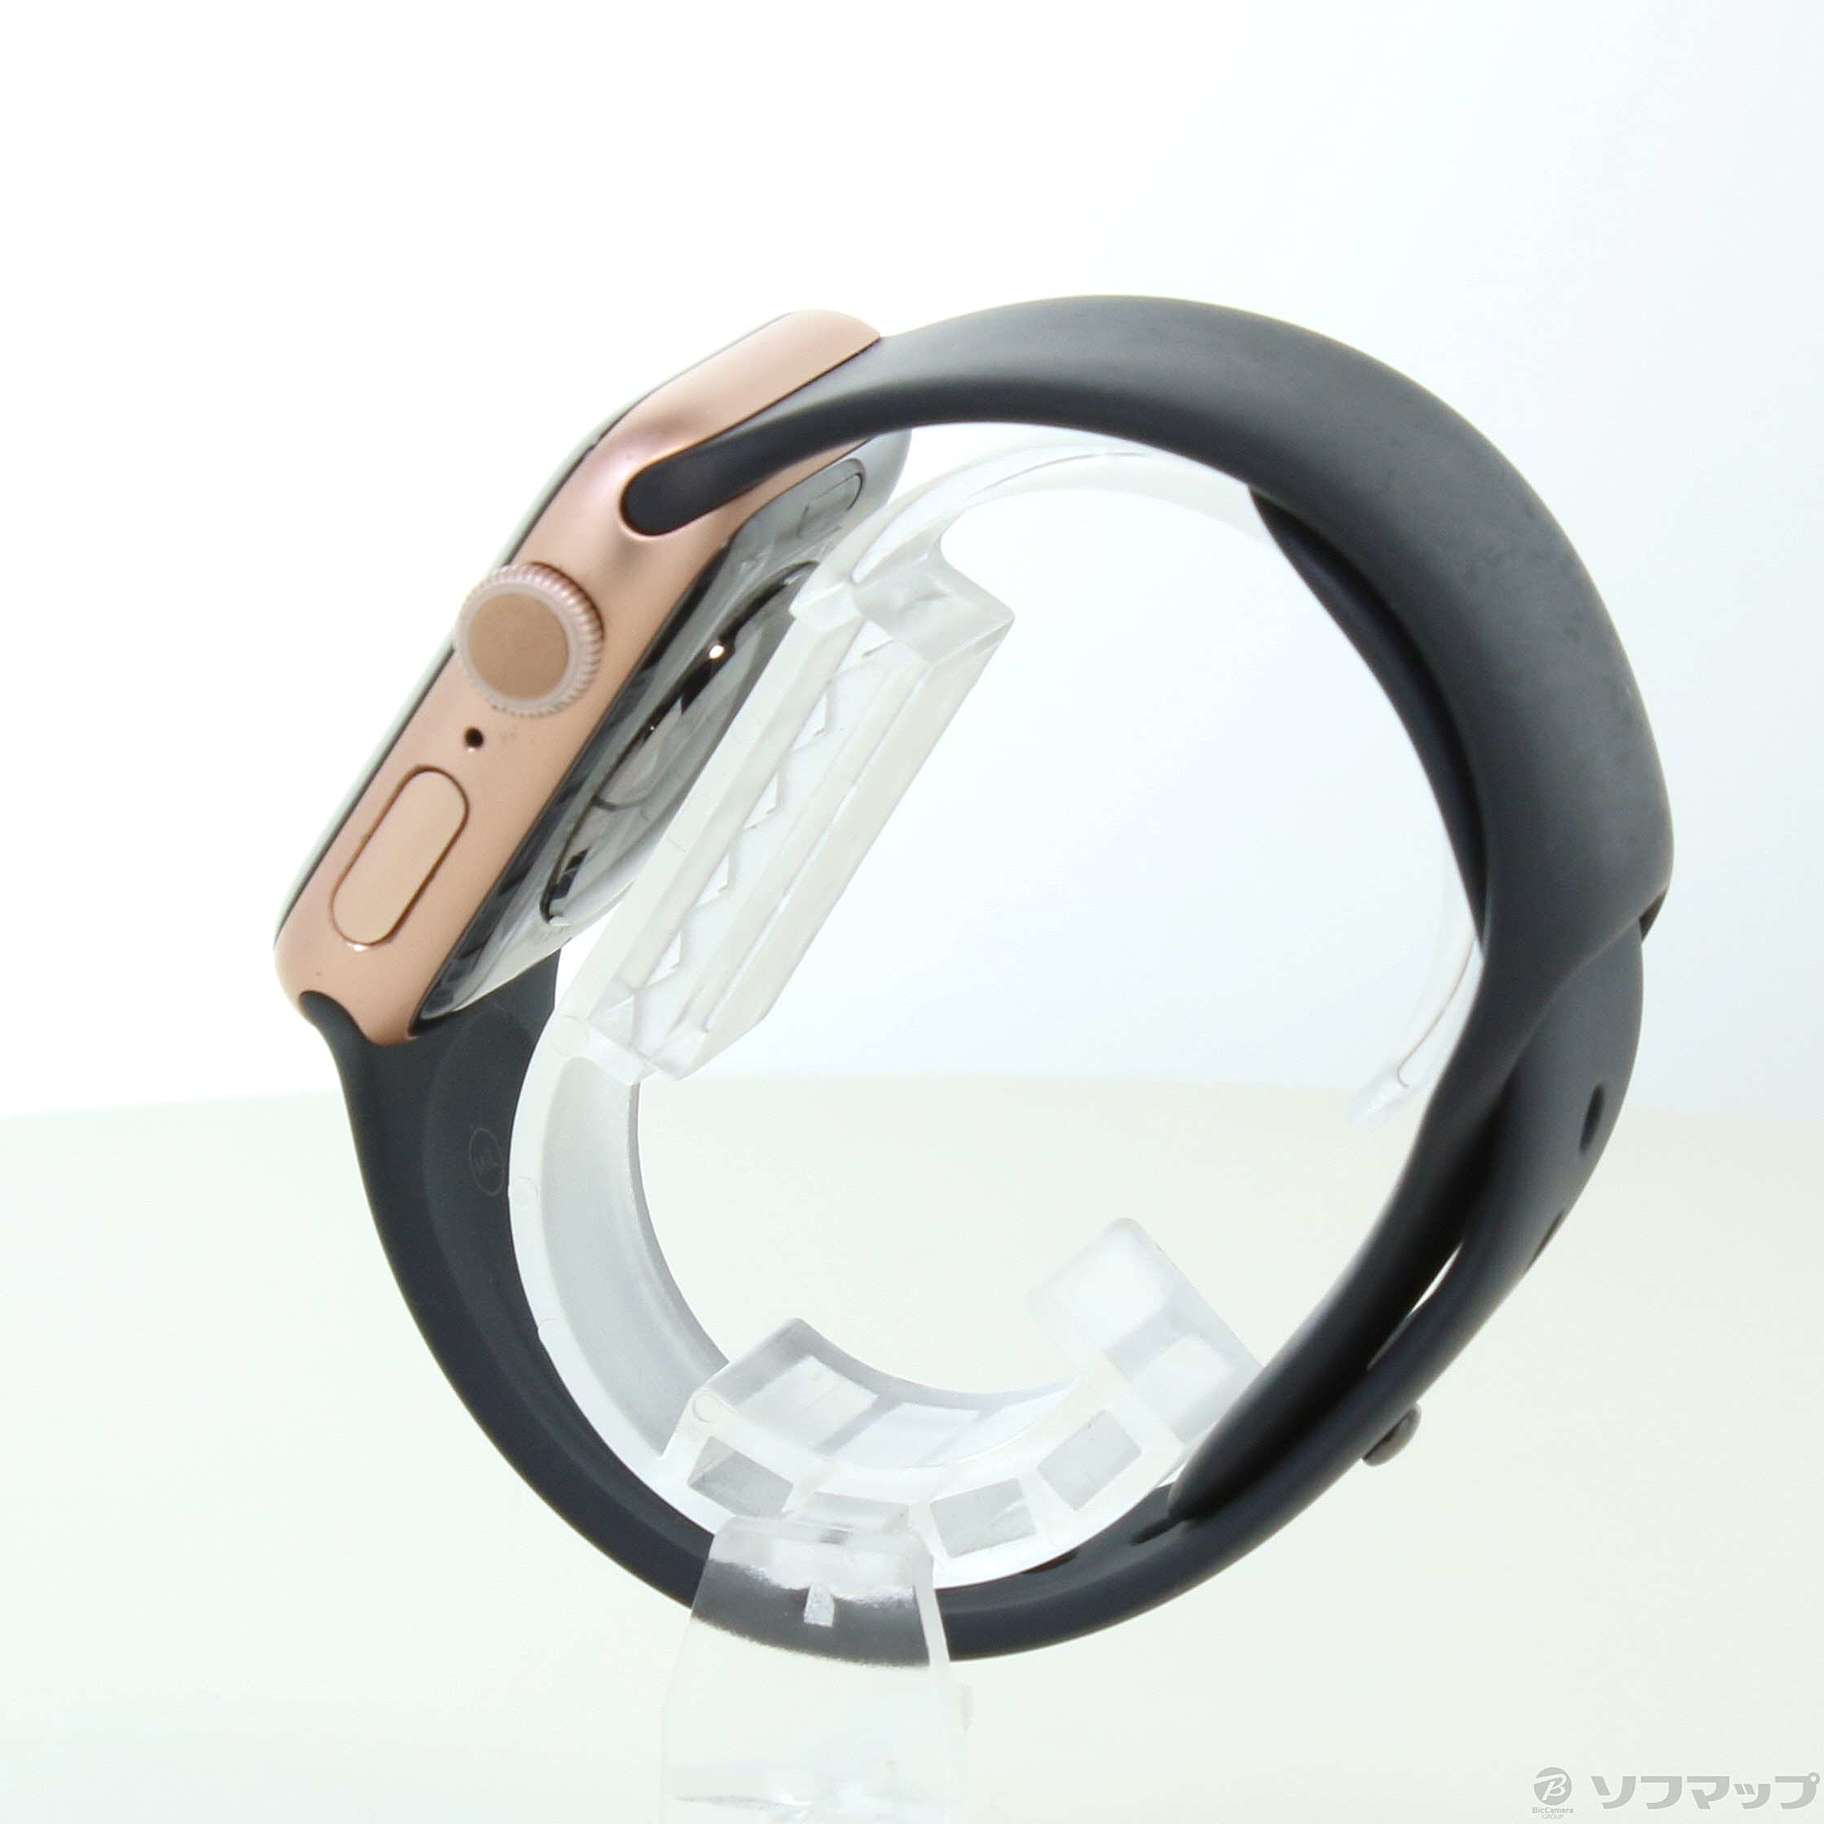 中古】Apple Watch Series 5 GPS 40mm ゴールドアルミニウム